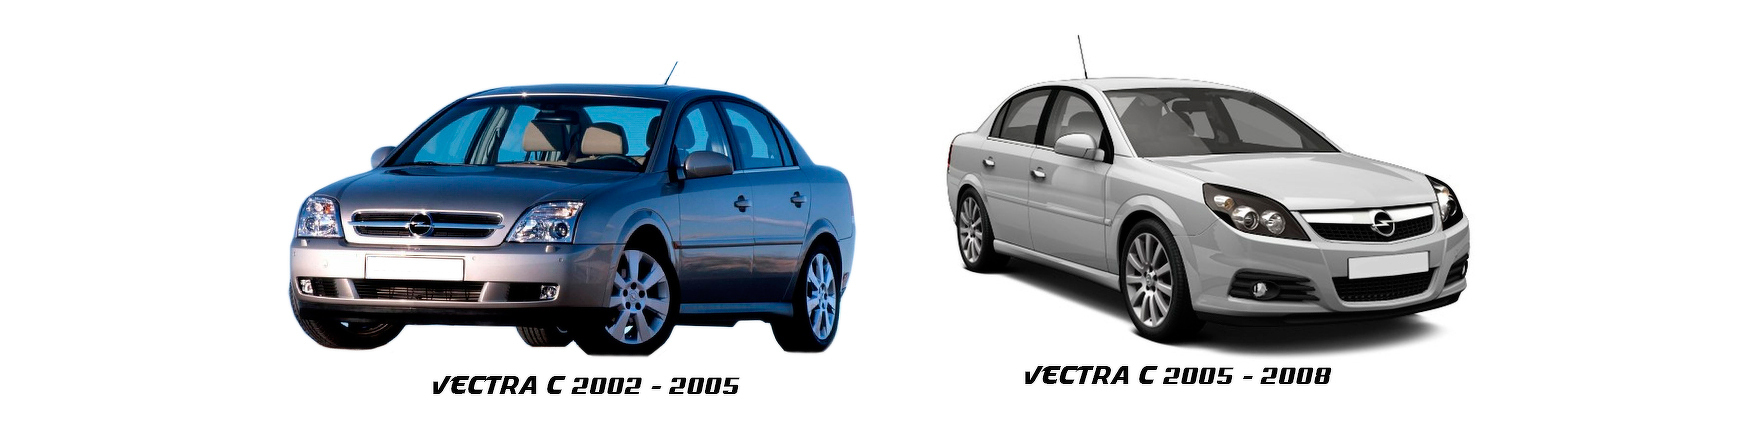 opel vectra c 2002 2003 2004 2005